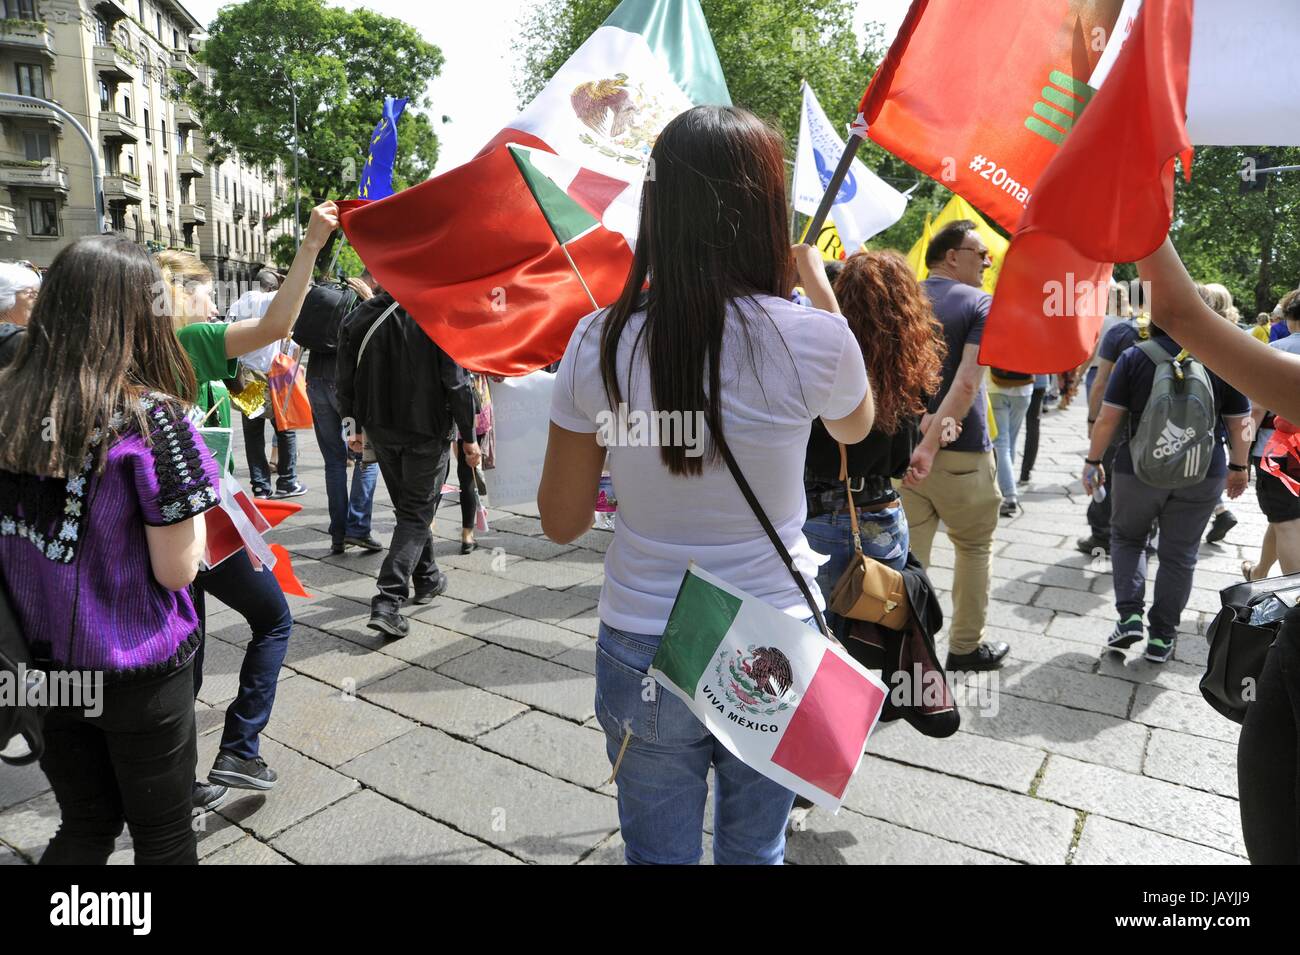 Milan, 20 mai 2017, 'Ensemble sans murs' démonstration pour l'accueil et l'intégration des peuples migrants ; représentant de la communauté mexicaine Banque D'Images